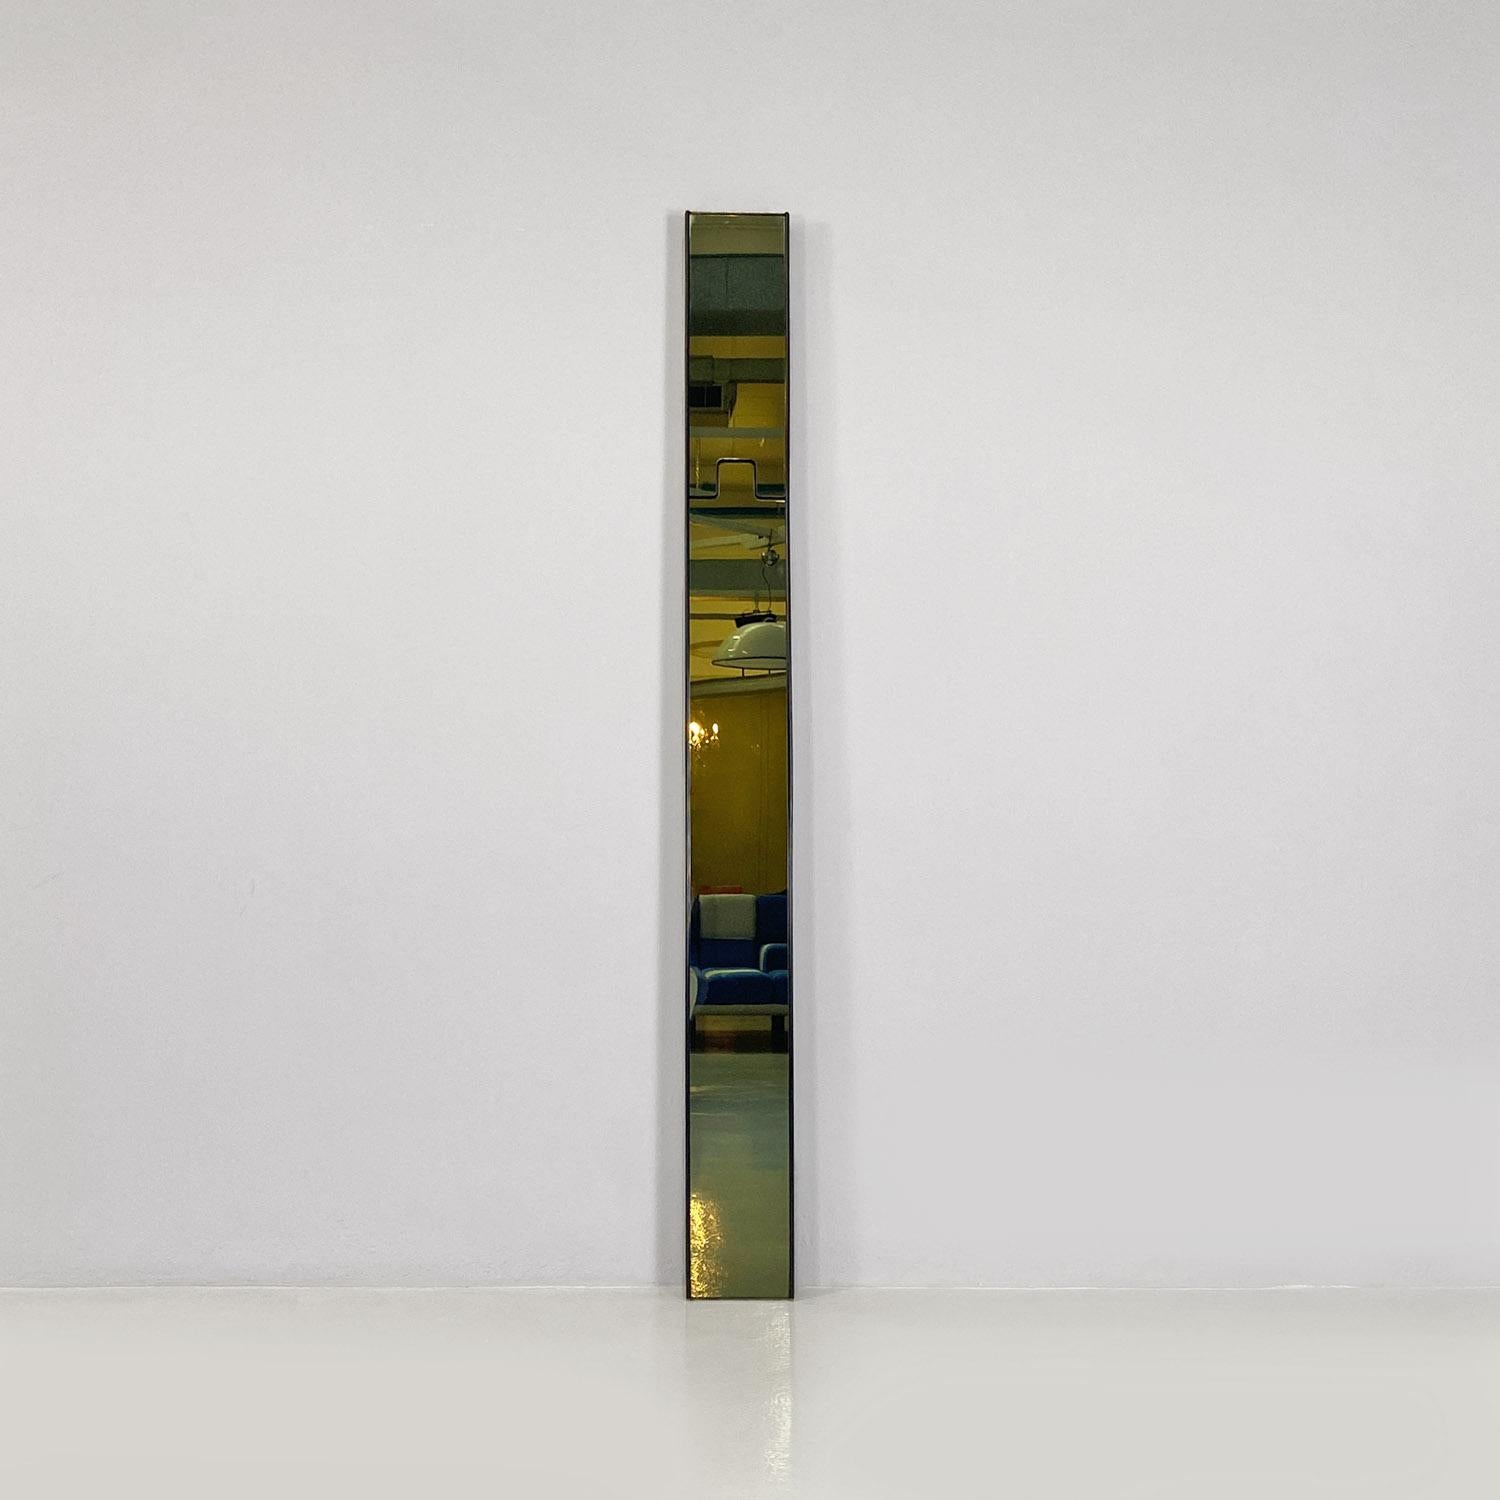 Modulare Wandspiegel Gronda aus italienischem Rauchglas und schwarzem Kunststoff von Luciano Bertoncini für Elco, 1970.
Wandspiegel Modell Gronda, bestehend aus vier rechteckigen Modulen mit geräuchertem Spiegelglas und mit einer Rahmenstruktur aus